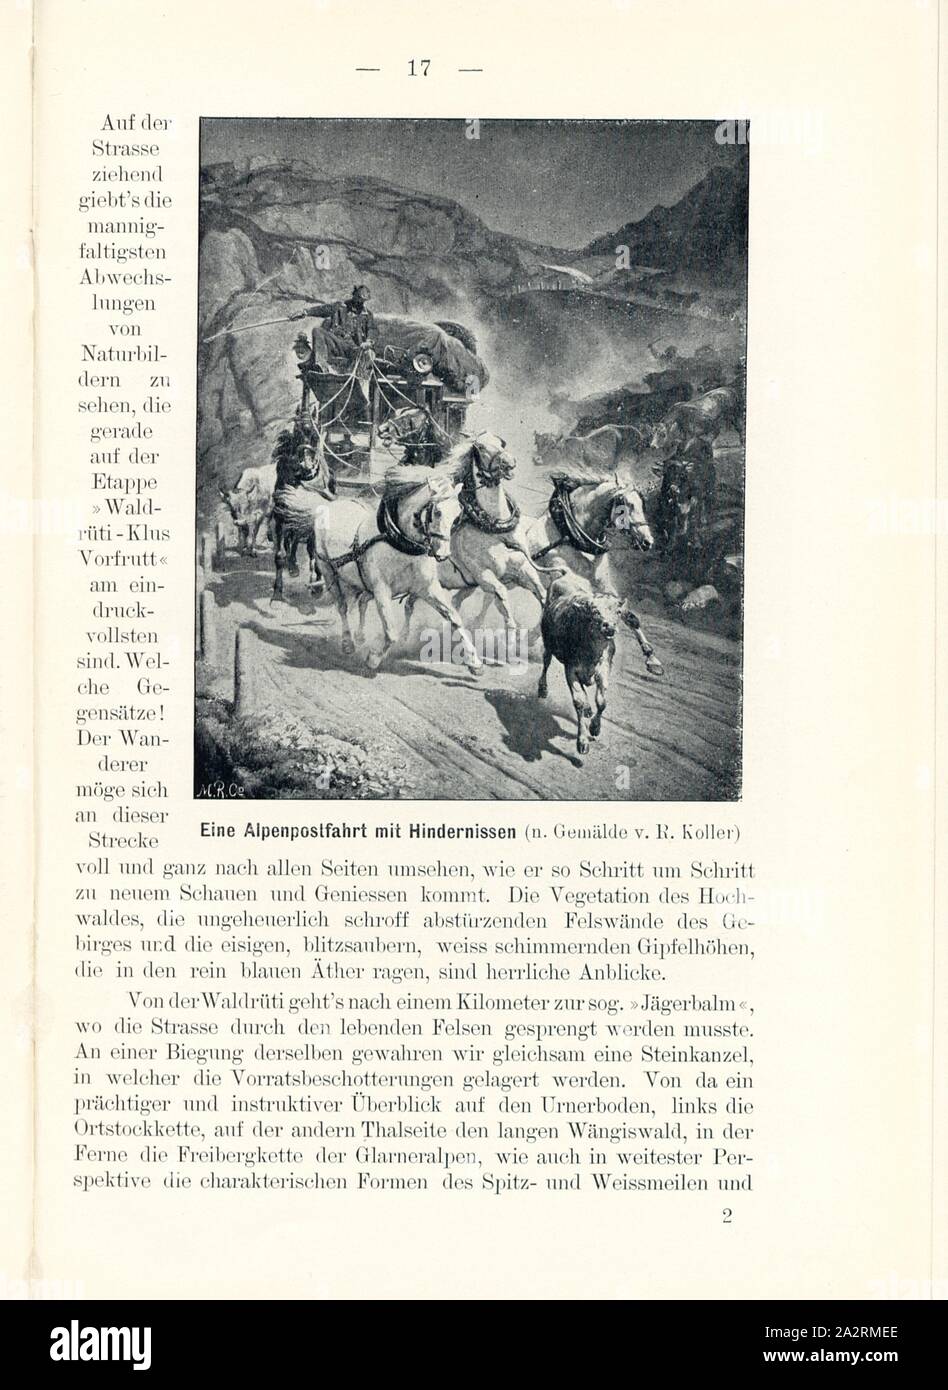 Eine Alpenpostfahrt mit Hindernissen (n. Gemälde v. R. Koller), The Gotthardpost, Signed: M.R.C, Fig. 15, p. 17, Koller, Rudolf (pinx.); Meisenbach, Riffarth und Co. (imp.), 1900, J. Knobel: Illustrierter Reisebegleiter für die Alpenstrasse des Klausen und ihre Zufahrtslinien. Glarus: Buchdruckerei J. Spälti, 1900 Stock Photo